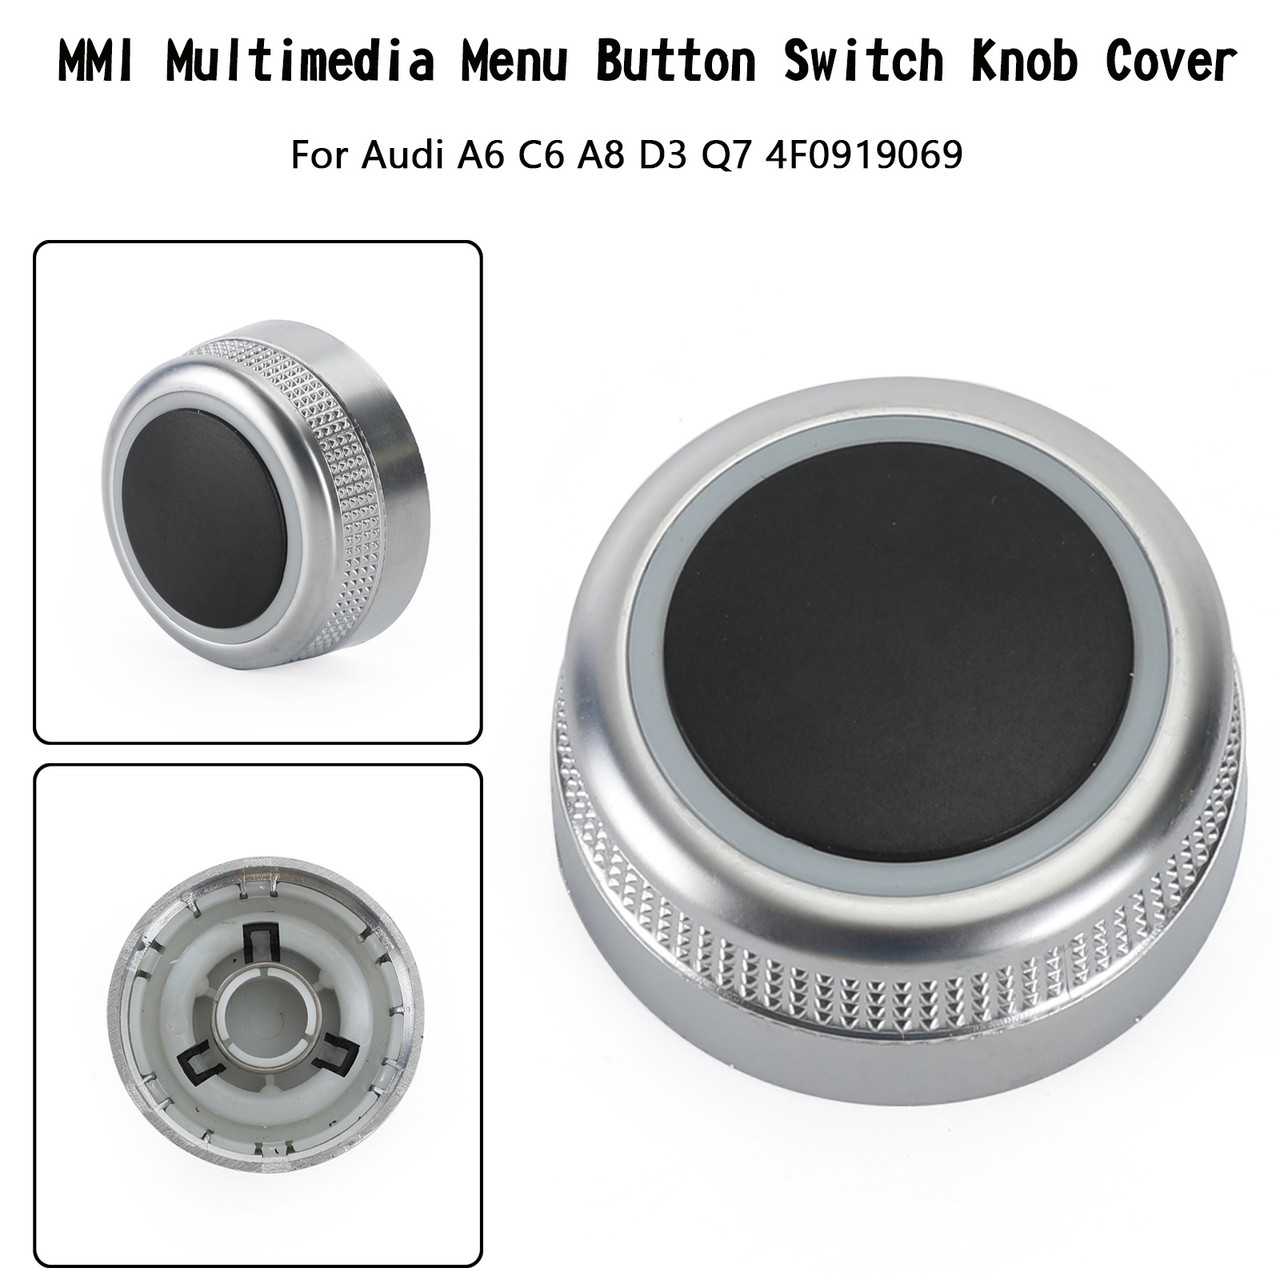 MMI Multimedia Menu Button Switch Knob Cover For Audi A6 C6 A8 D3 Q7 4F0919069